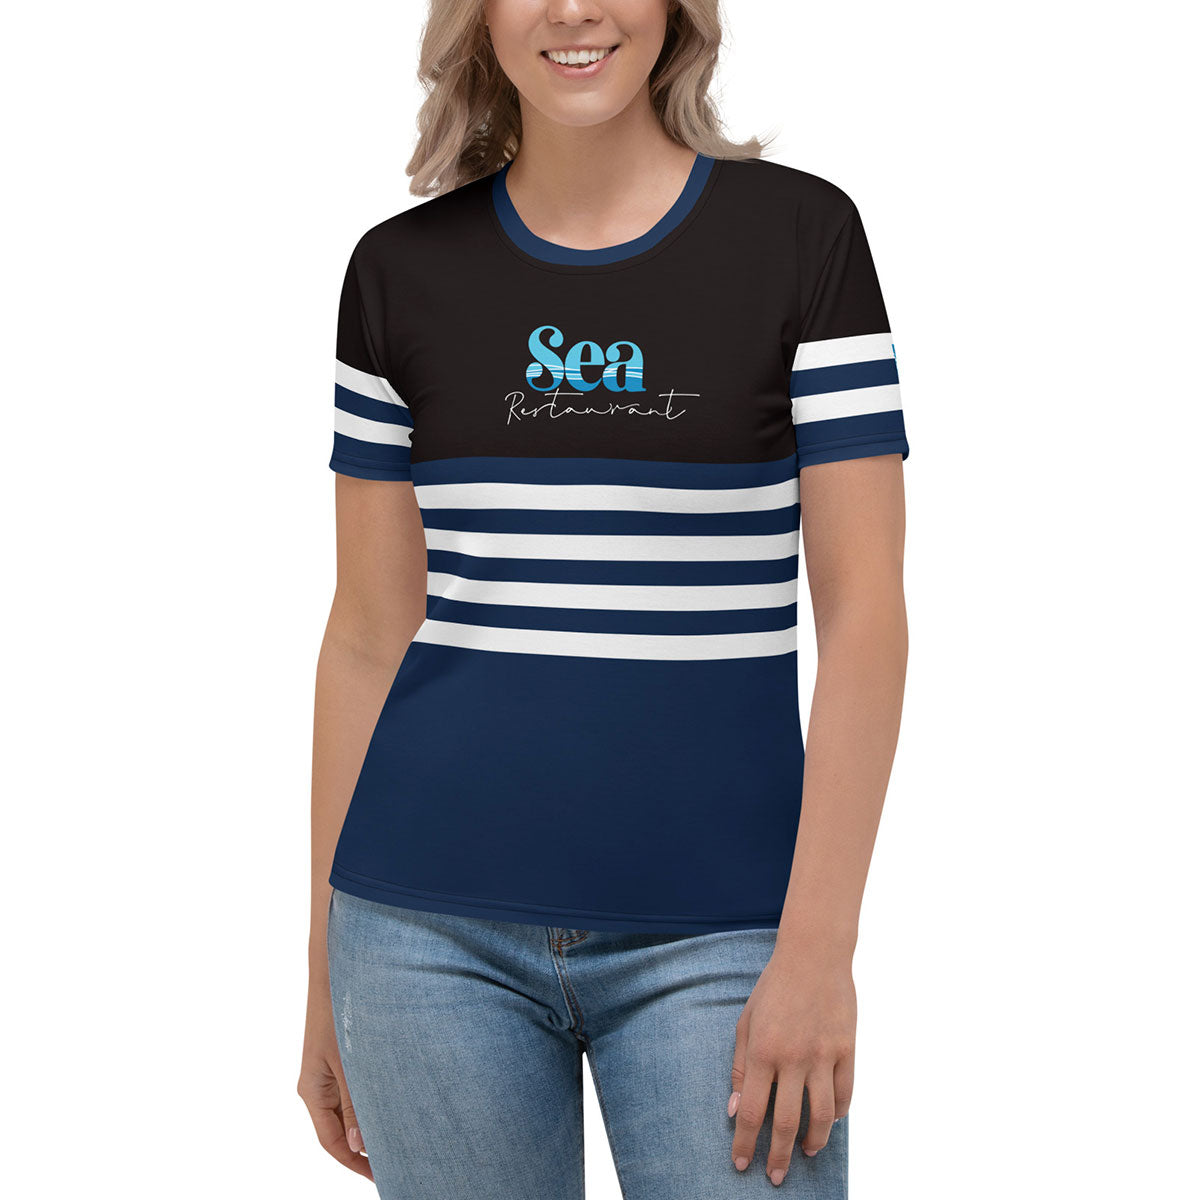 SEA RESTAURANT · Camiseta m/corta·Mujer · Premium·Full Print-254x2ipi